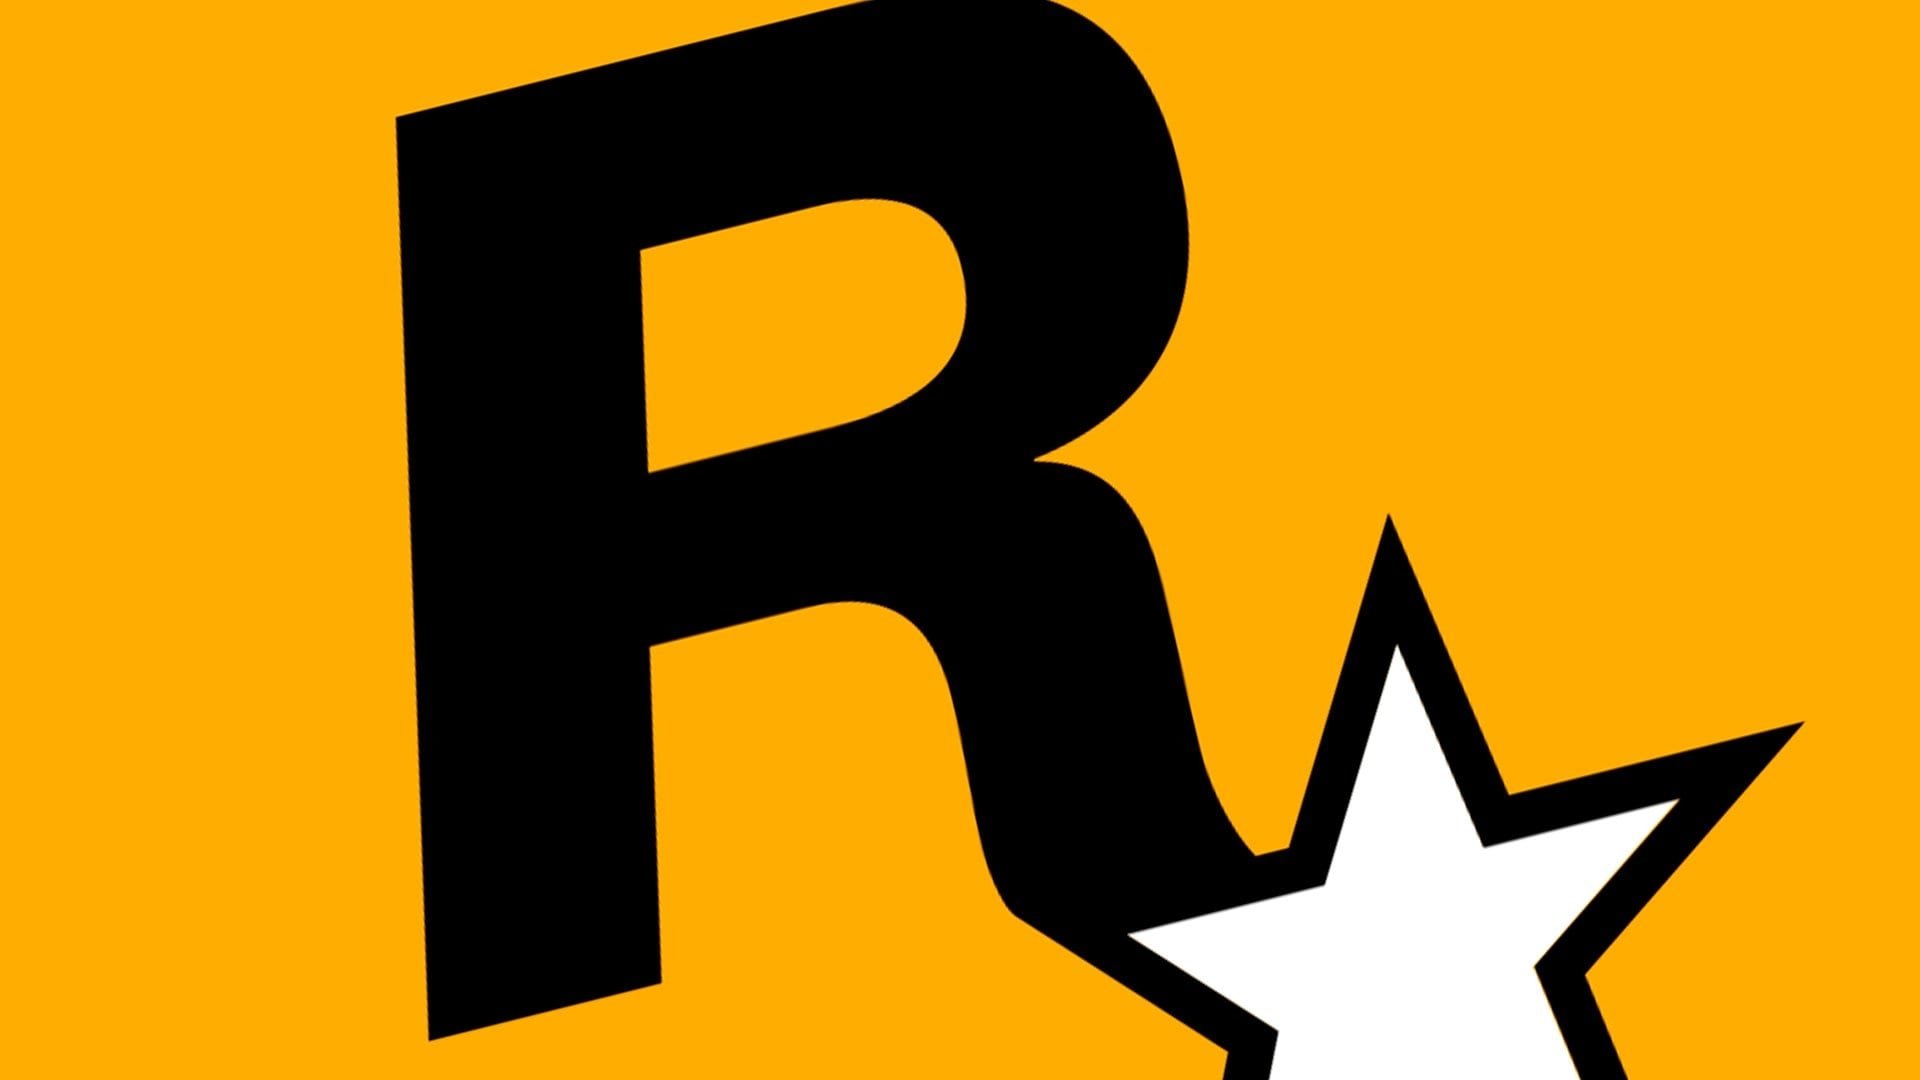 logo da Rockstar games